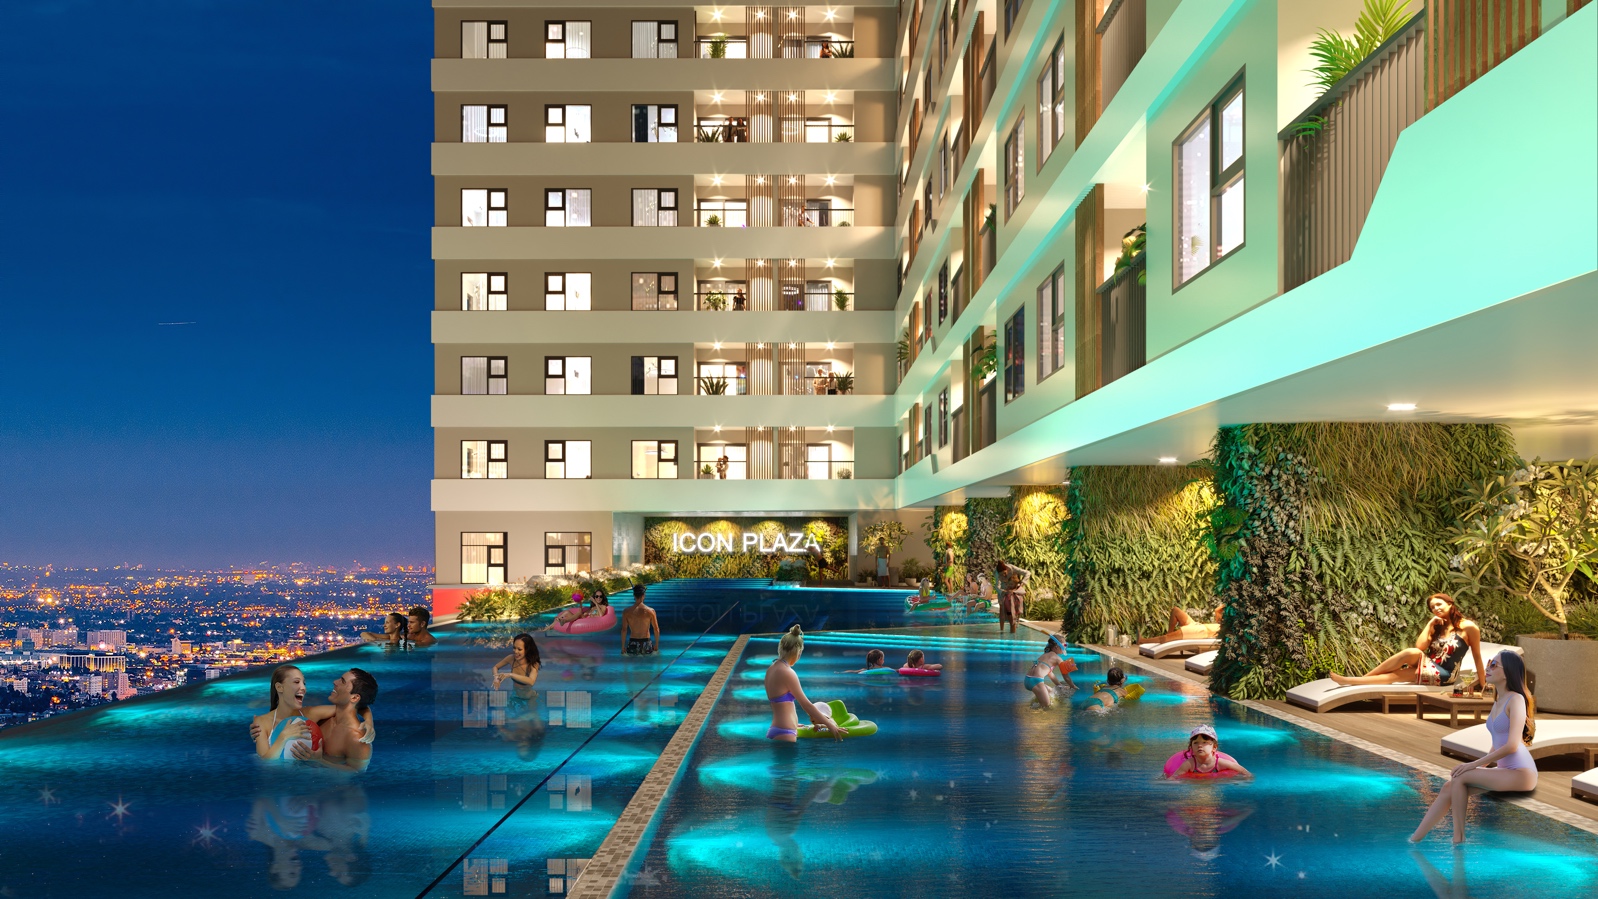 Danh Việt Group dành phần lớn diện tích tầng 3 để xây dựng hồ bơi dài 54m và các khu BBQ, gym, yoga, vườn thư giãn, khu vui chơi trẻ em như một khu nghỉ dưỡng trên cao